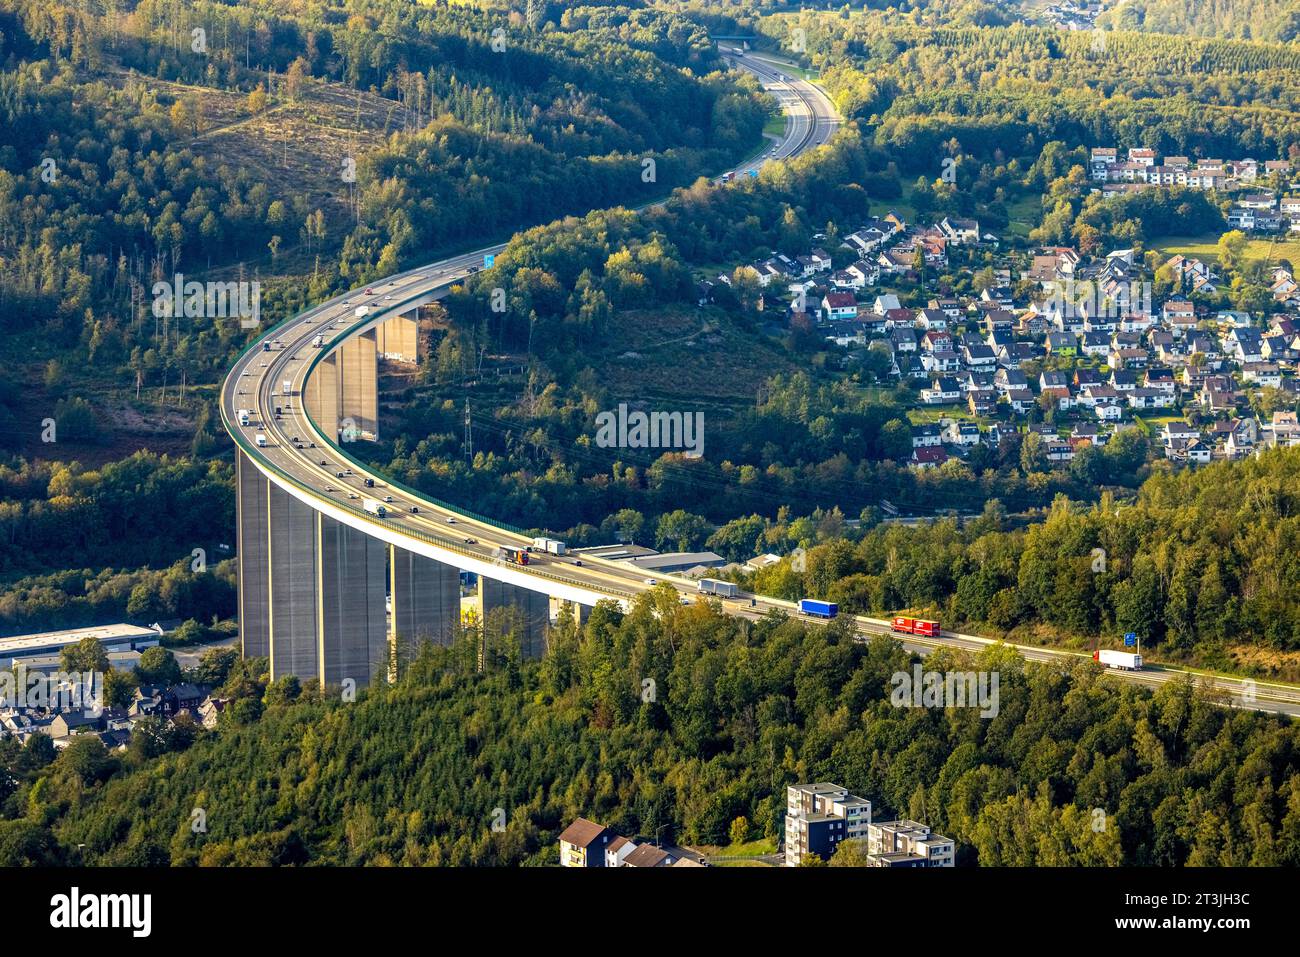 Luftbild, Autobahnbrücke Siegtalbrücke der Autobahn A45 Sauerlandlinie, geplanter Ersatzneubau 2027, Blick auf Siegen, Niederschelden, Siegen, Sauerland, Nordrhein-Westfalen, Deutschland ACHTUNGxMINDESTHONORARx60xEURO *** vue aérienne, pont autoroutier Siegtalbrücke de l'autoroute A45 Sauerlandlinie, remplacement prévu 2027, vue de Siegen, Niederschelden, Siegen, Sauerland, Rhénanie du Nord-Westphalie, Allemagne ATTENTIONXMINDESTHONORARx60xEURO crédit : Imago/Alamy Live News Banque D'Images